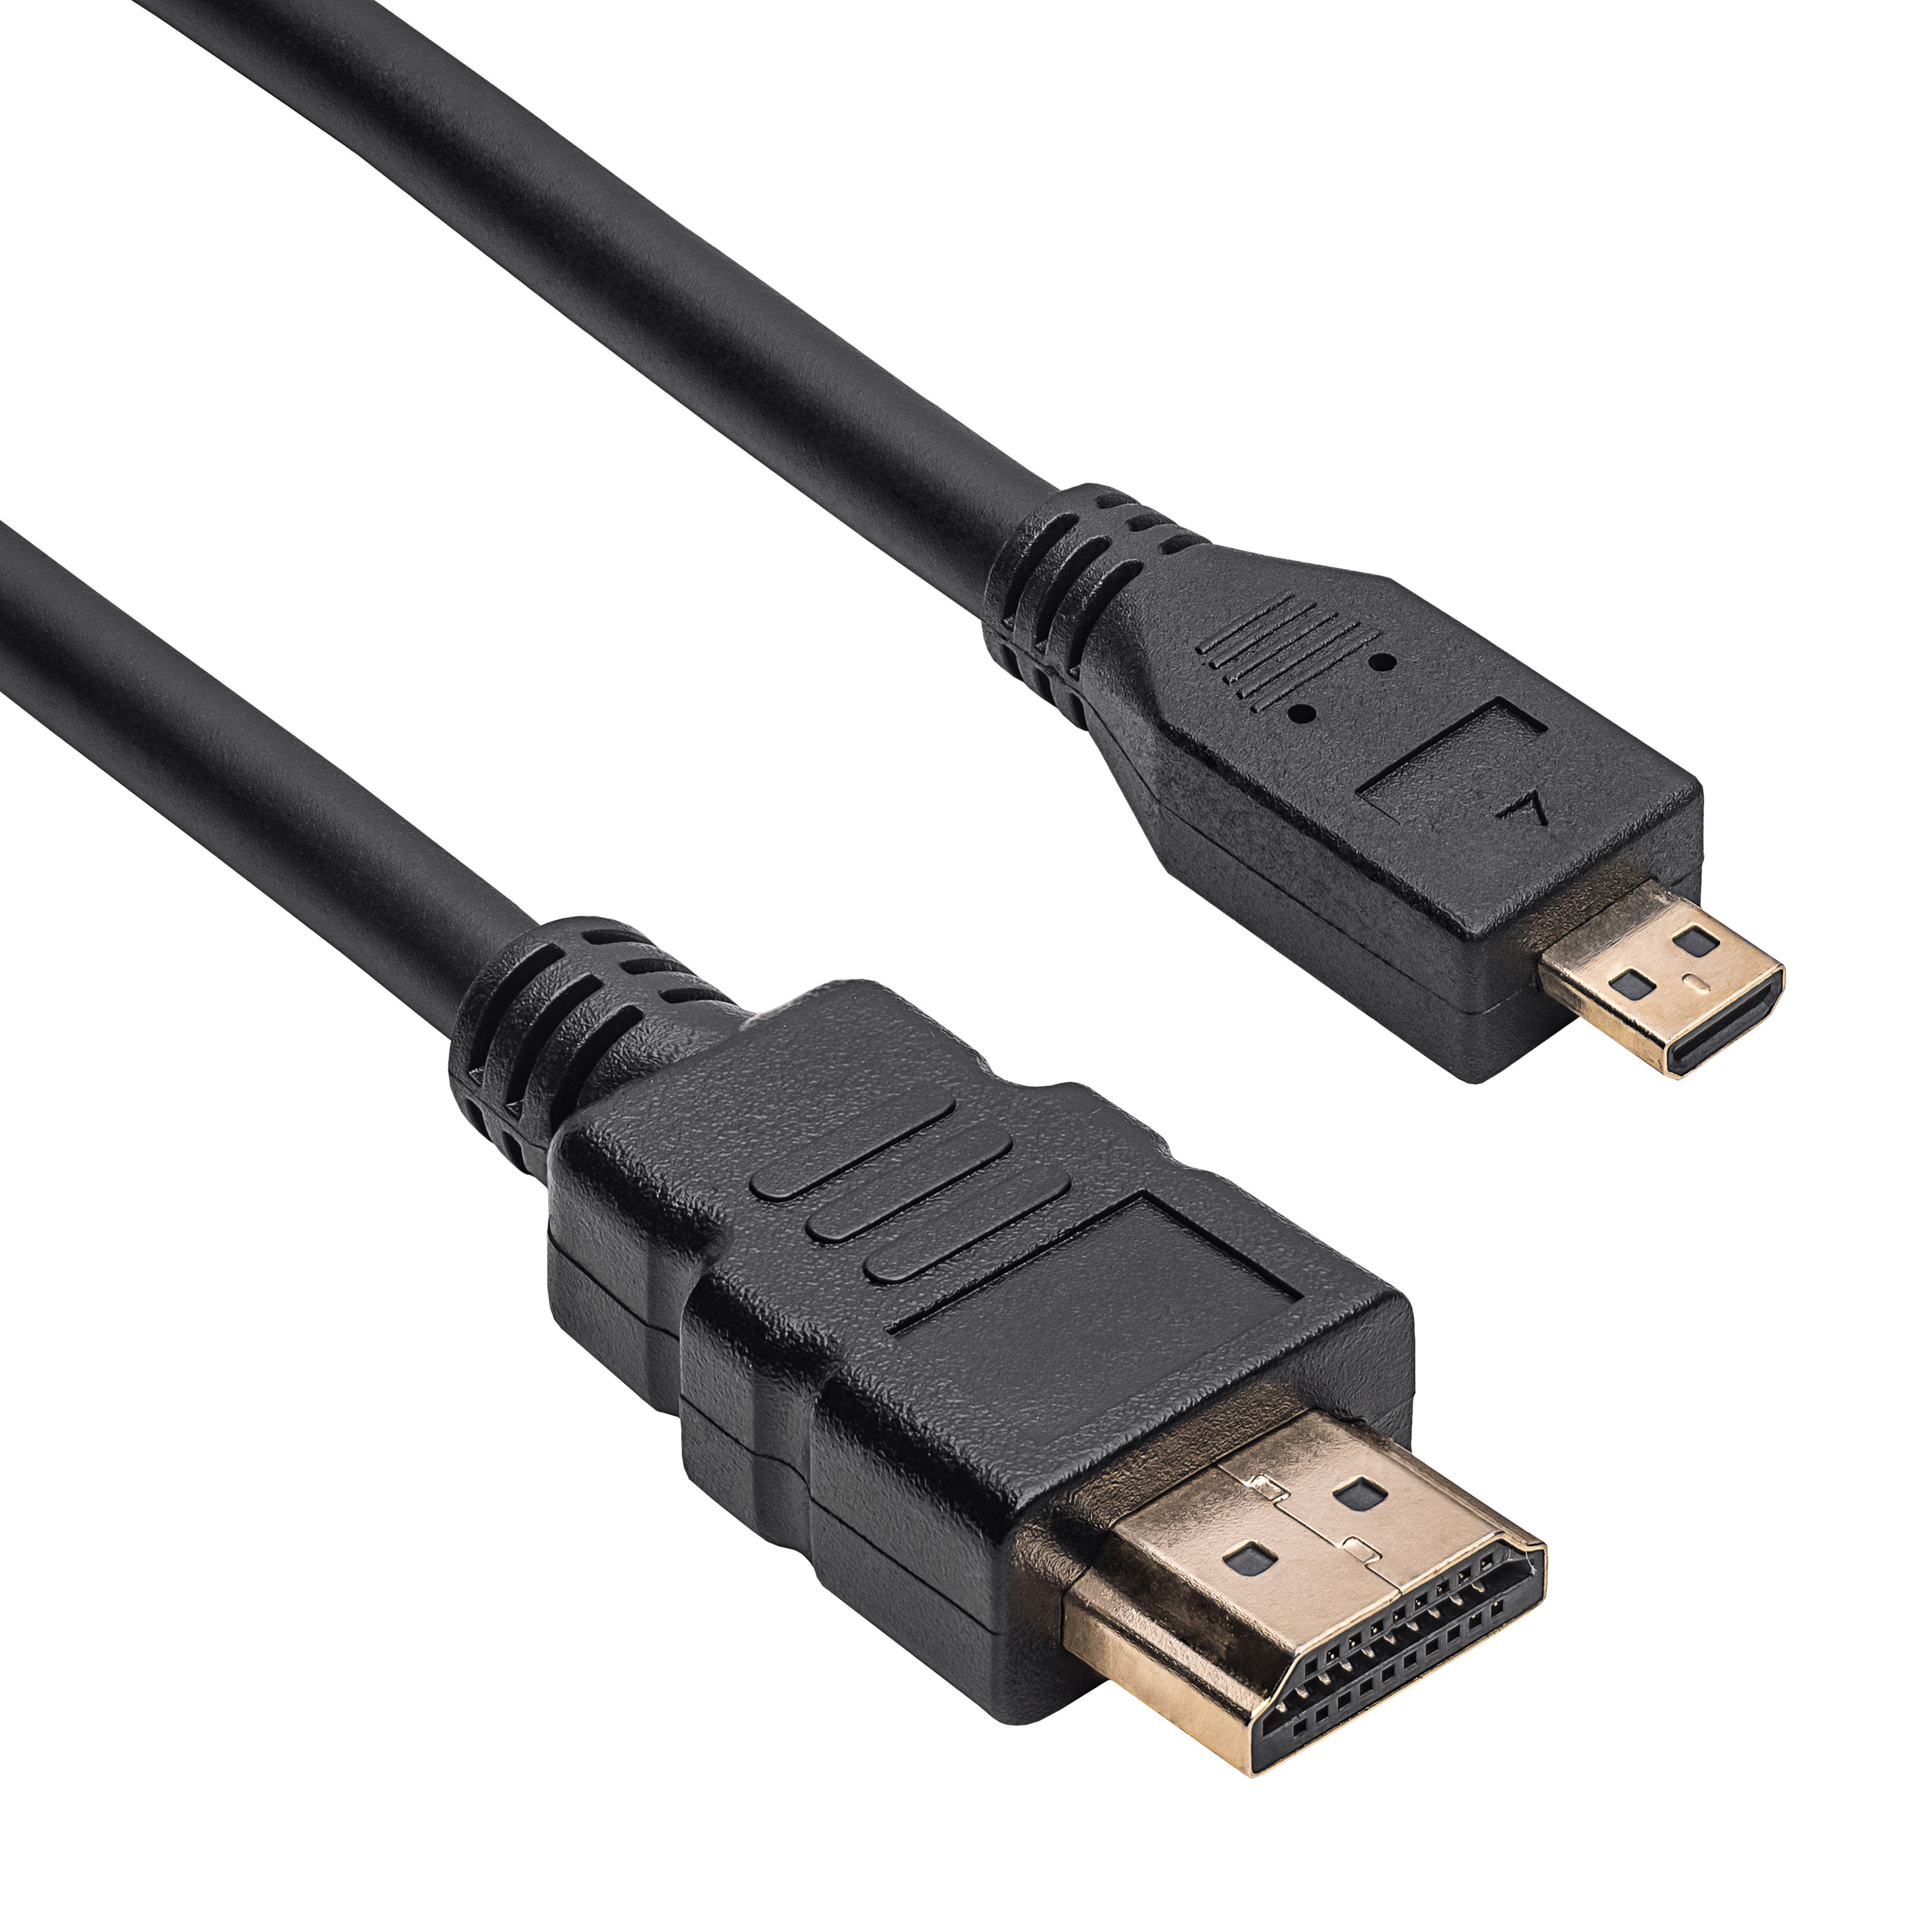 Cable HDMI a micro HDMI